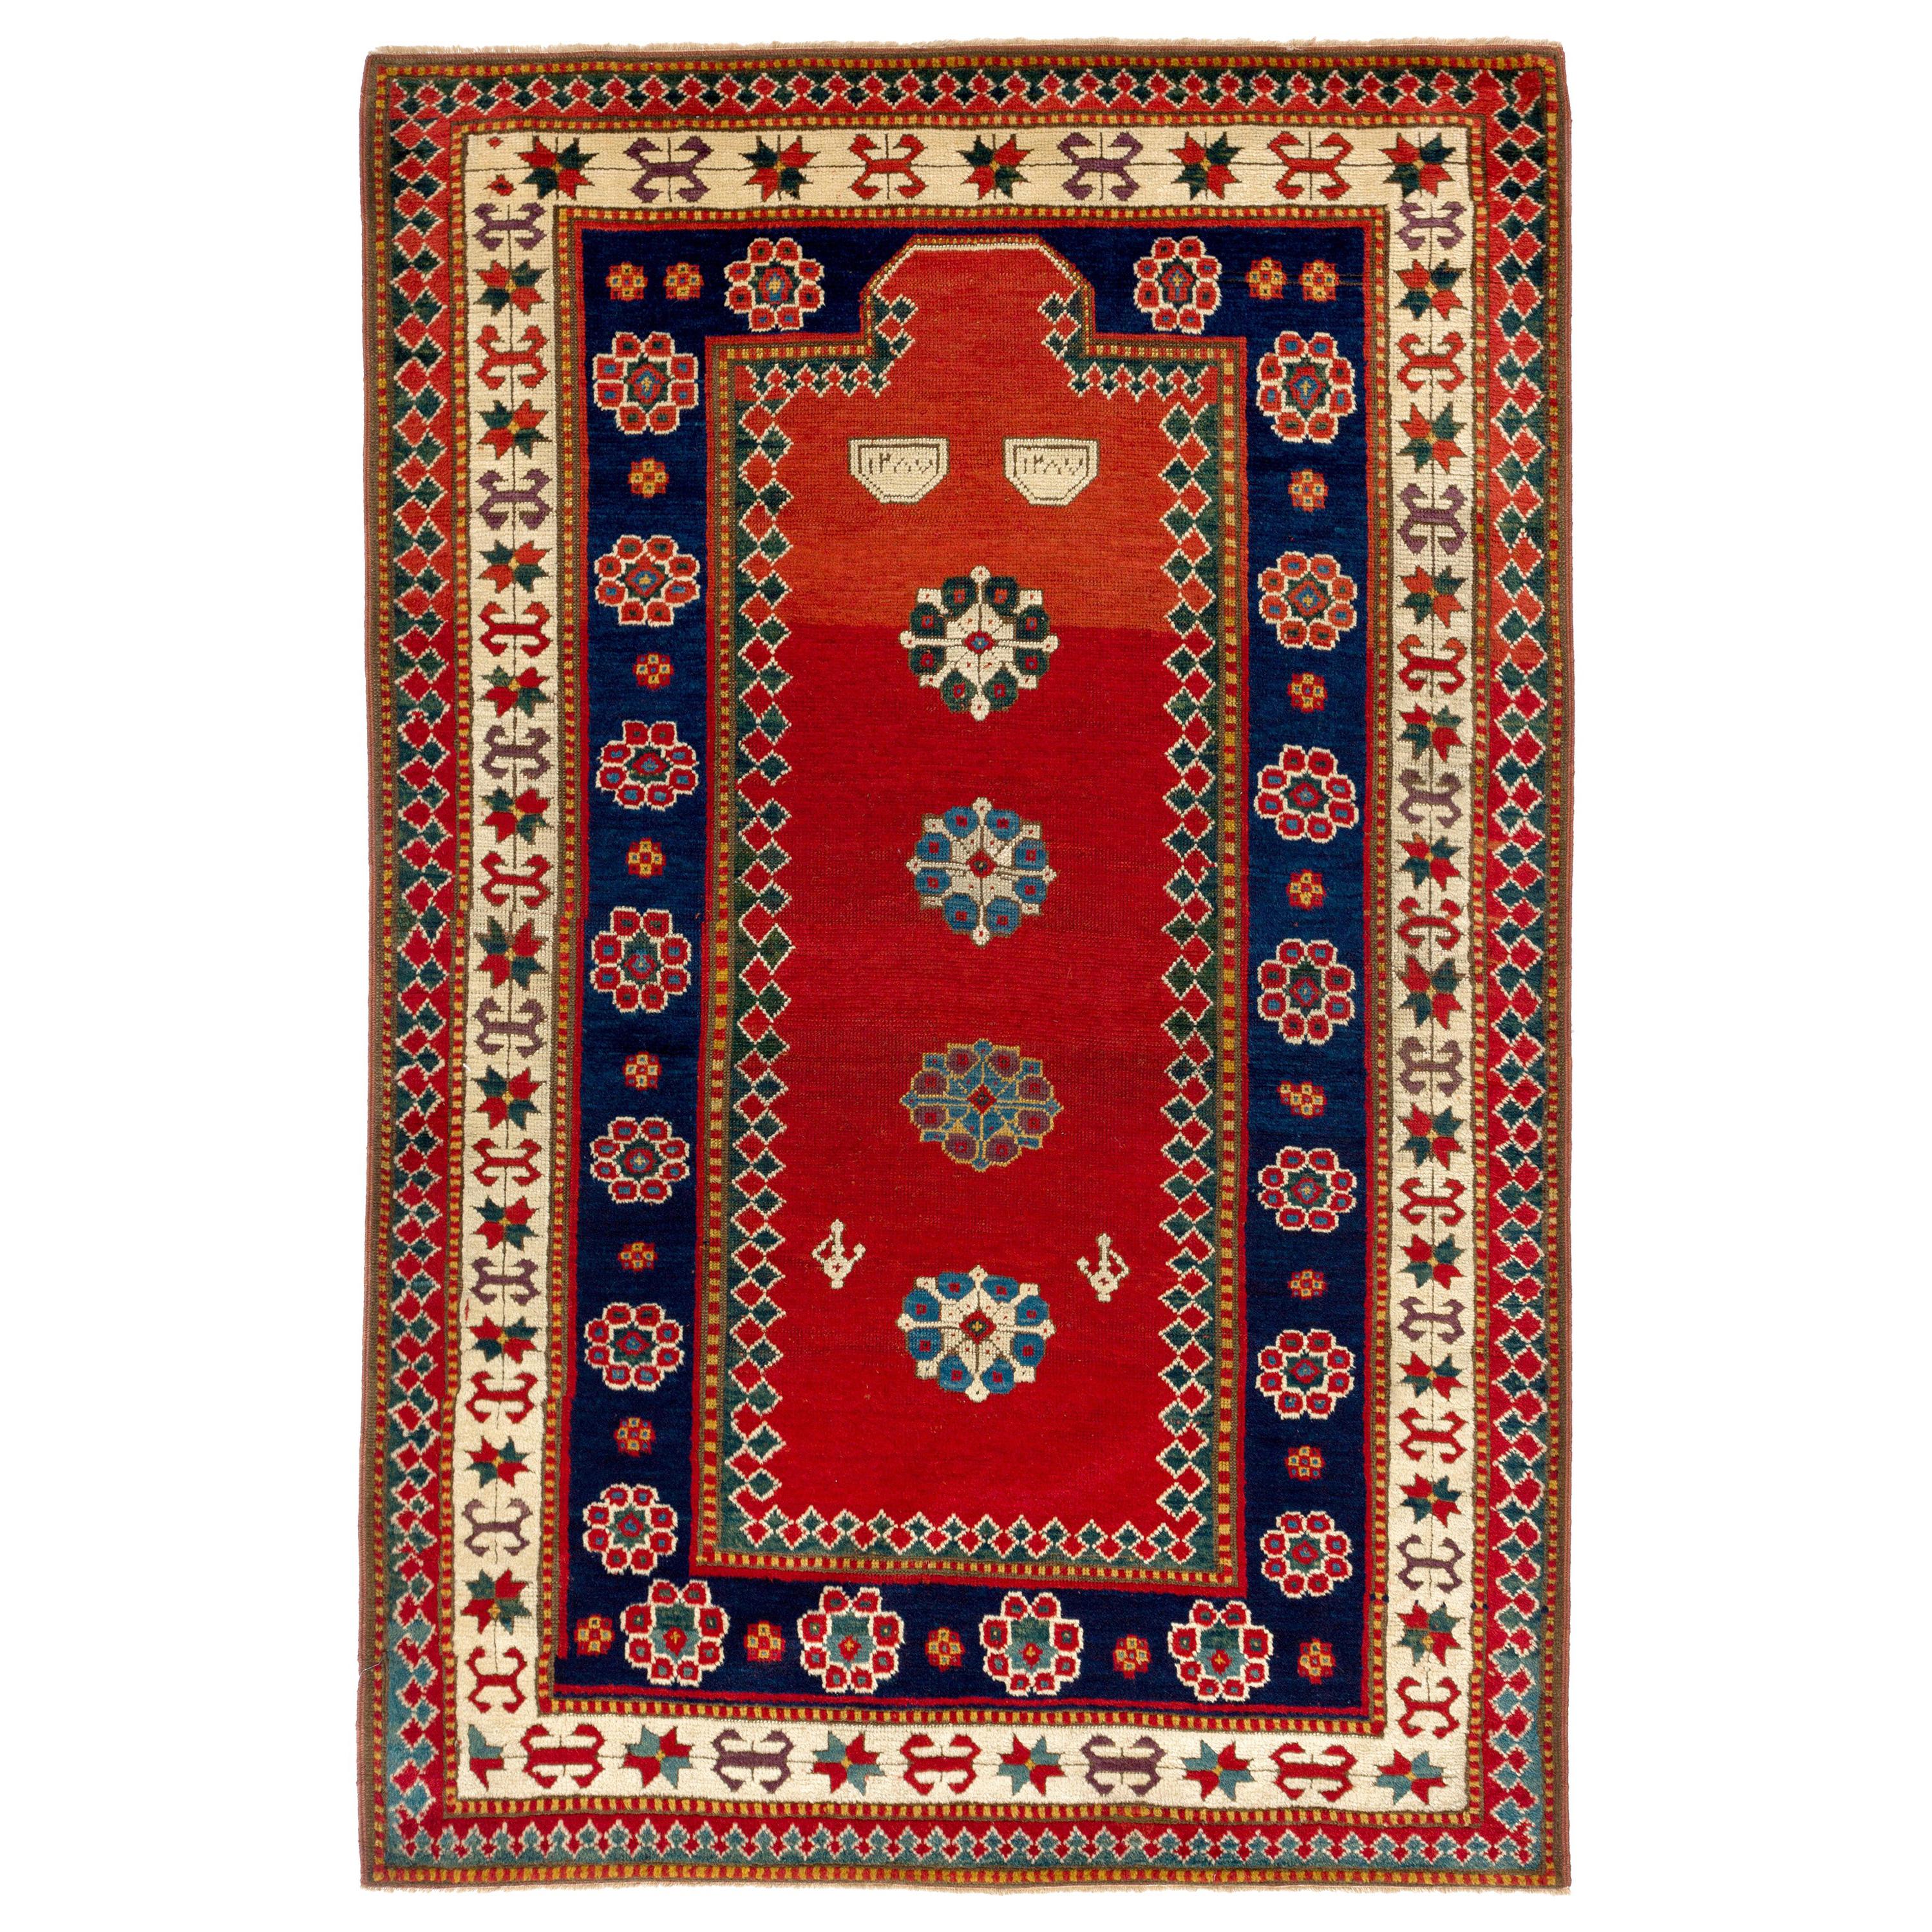 Datiert 1870. Antiker kaukasischer Kazak-Teppich, oberes Regal, Sammler-Gebetteppich